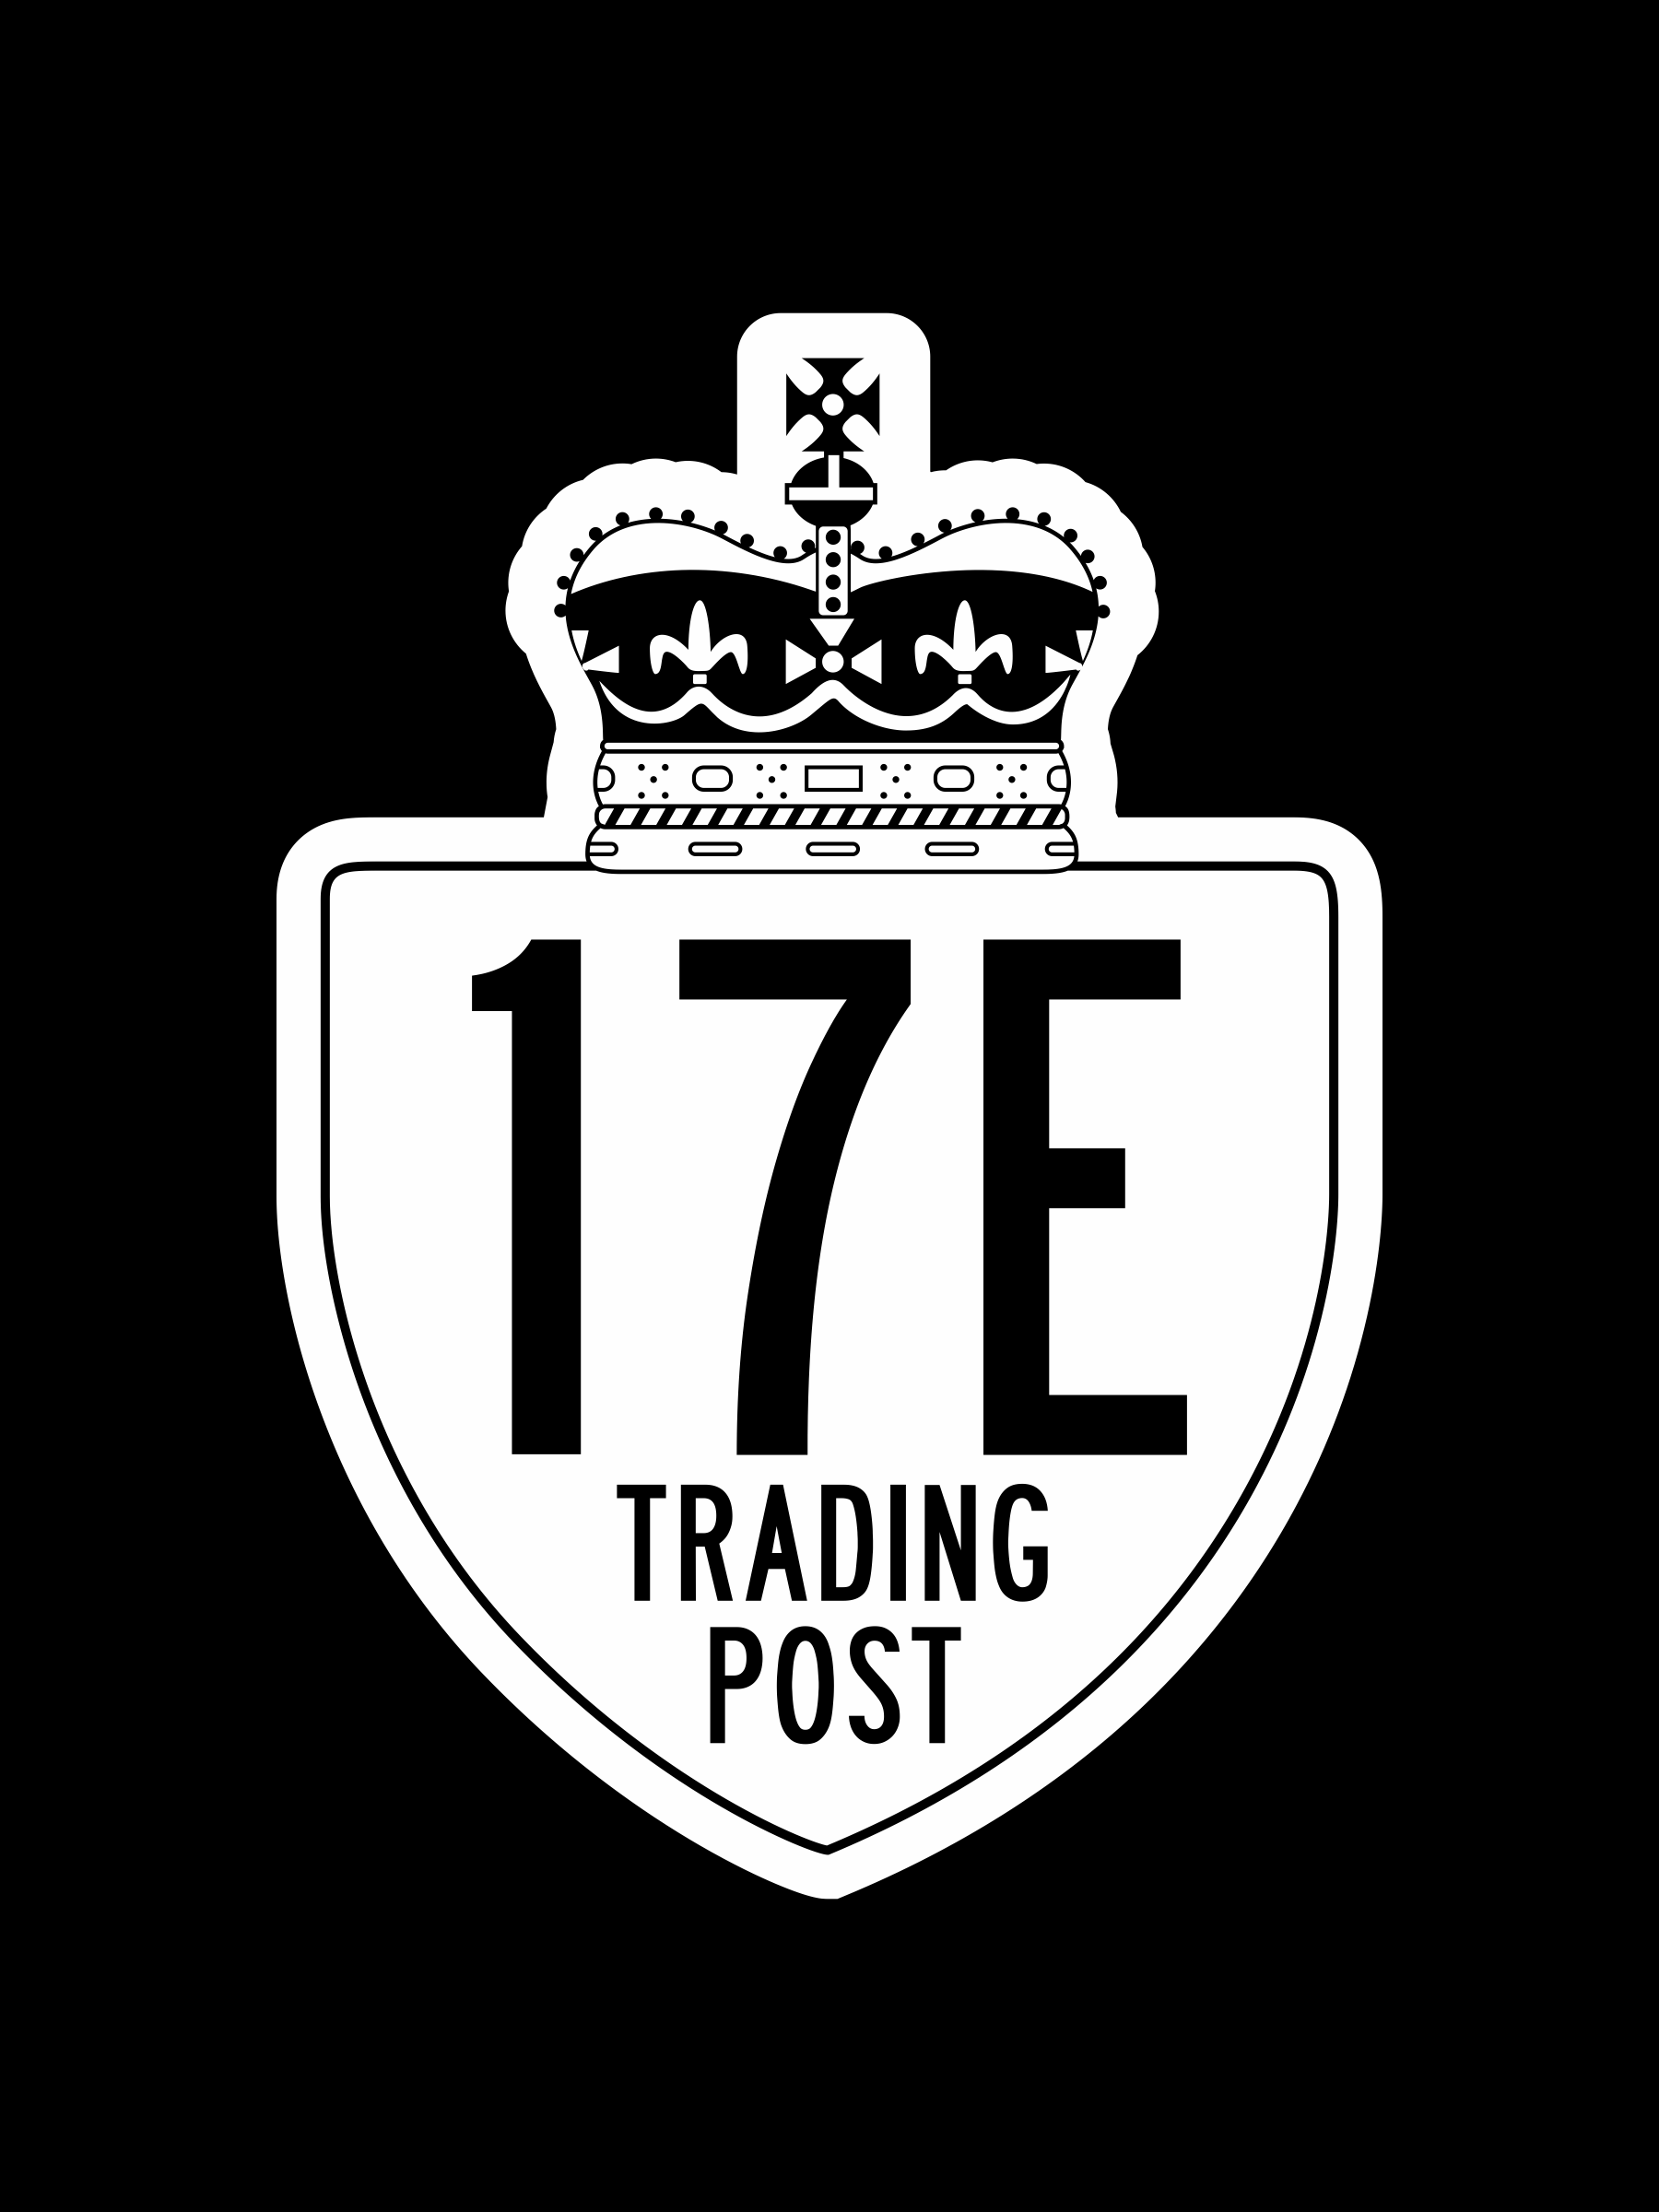 17E Trading Post